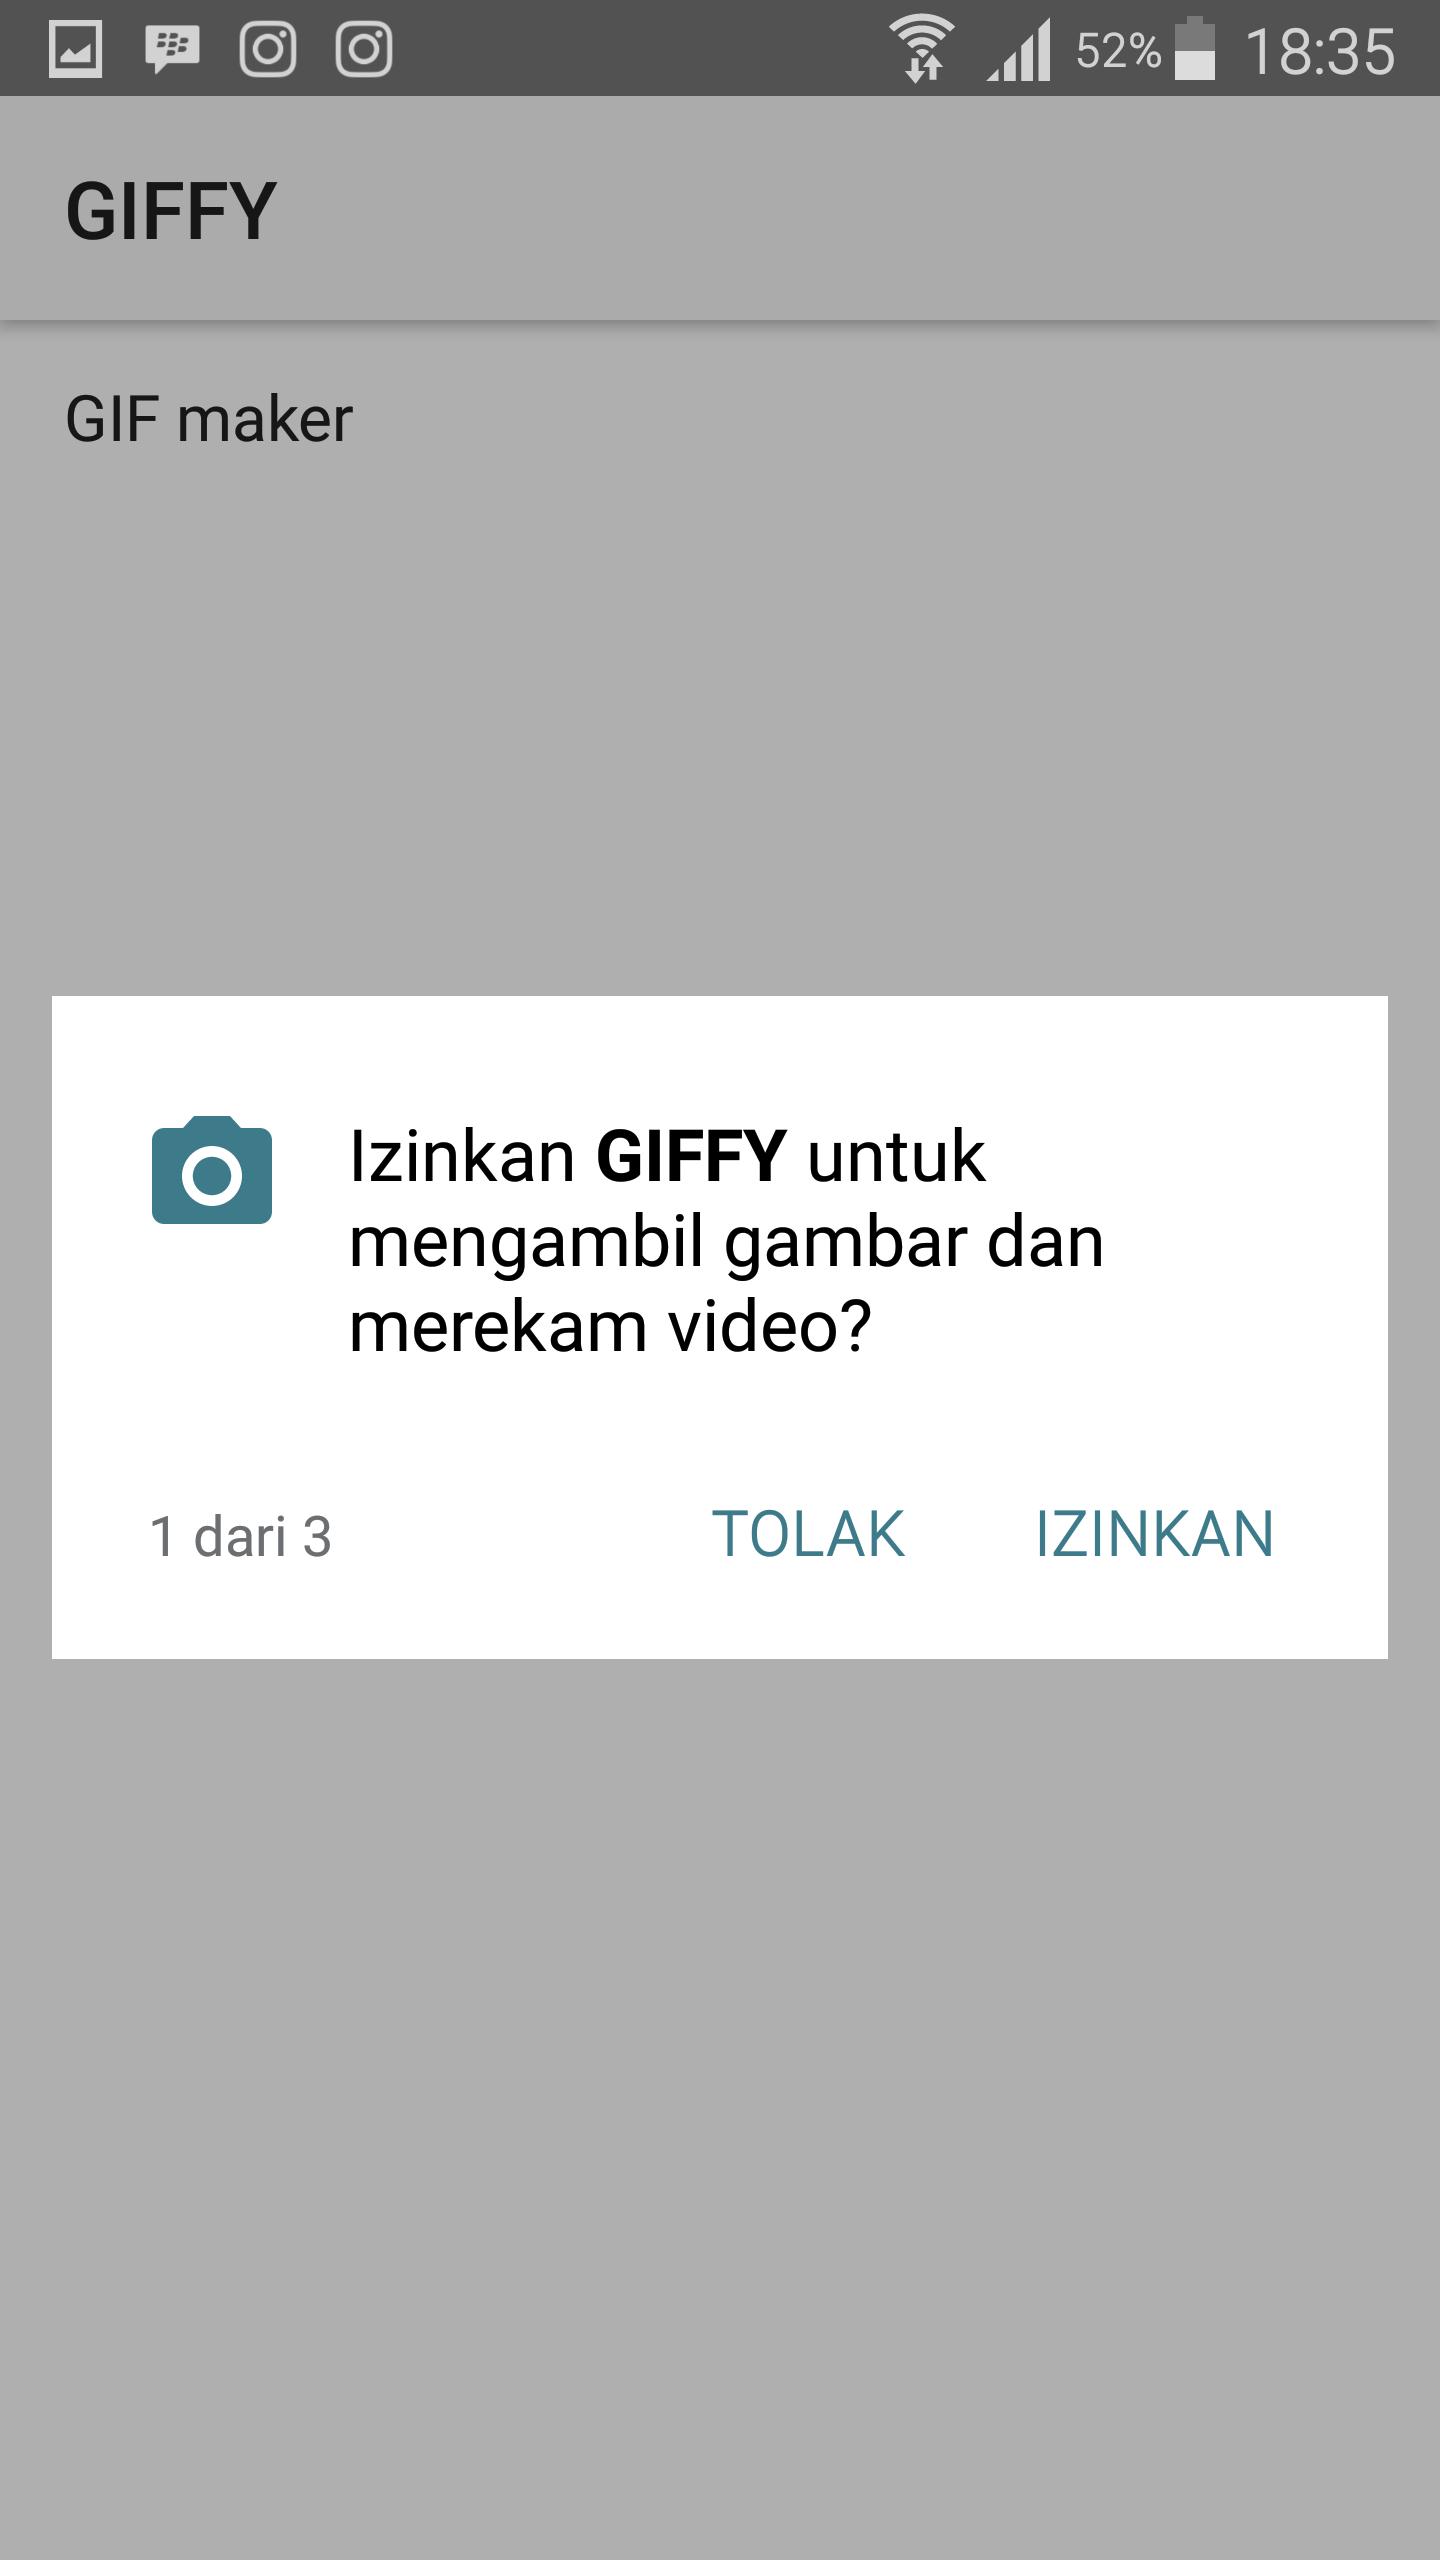 GIFFY : Gif Maker